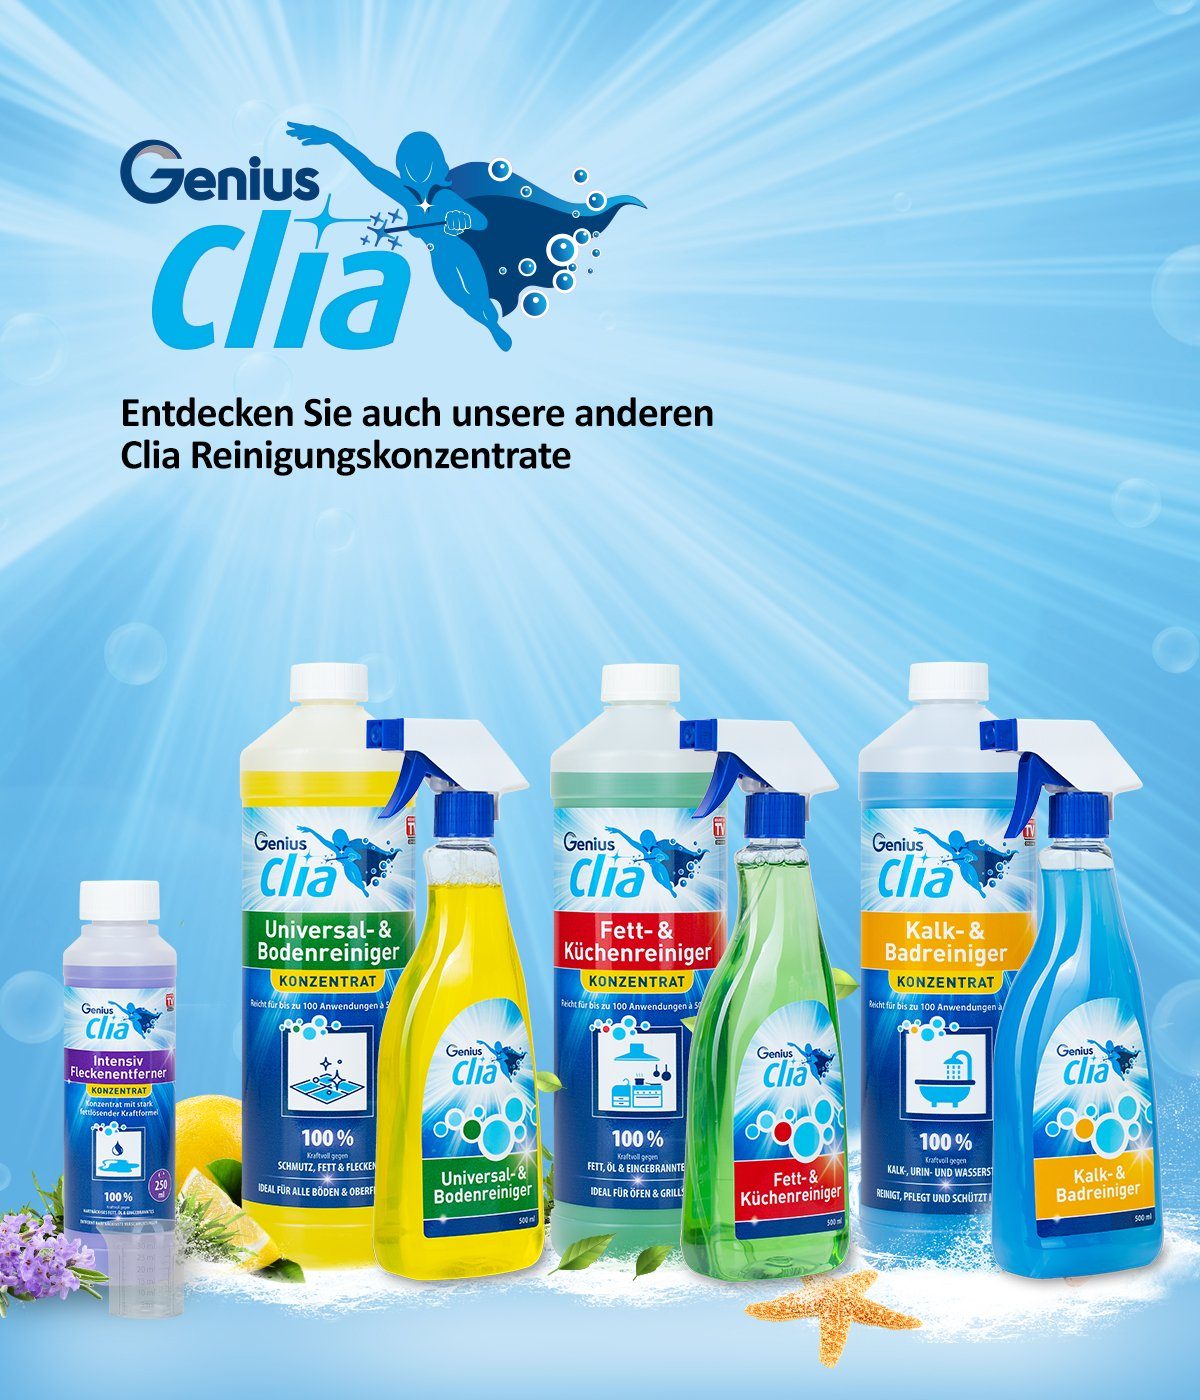 Genius Reinigungskonzentrate Clia zu Reinigungsspray 30ml Dosierbecher für Umwelt die Geld Messbecher (Spart hilft und bares schonen)